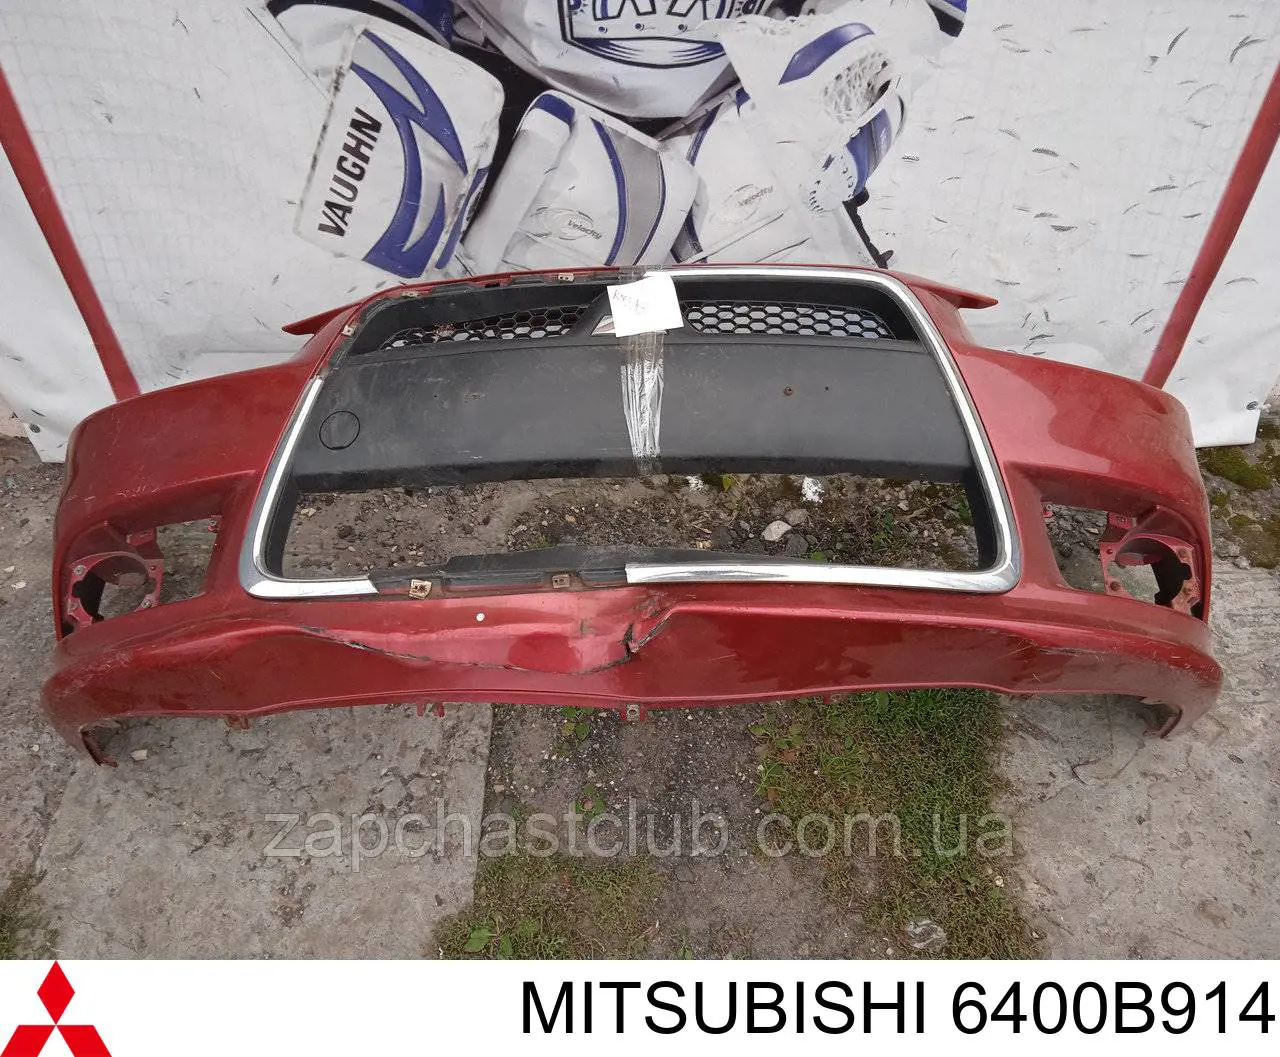 6400B914 Mitsubishi передний бампер